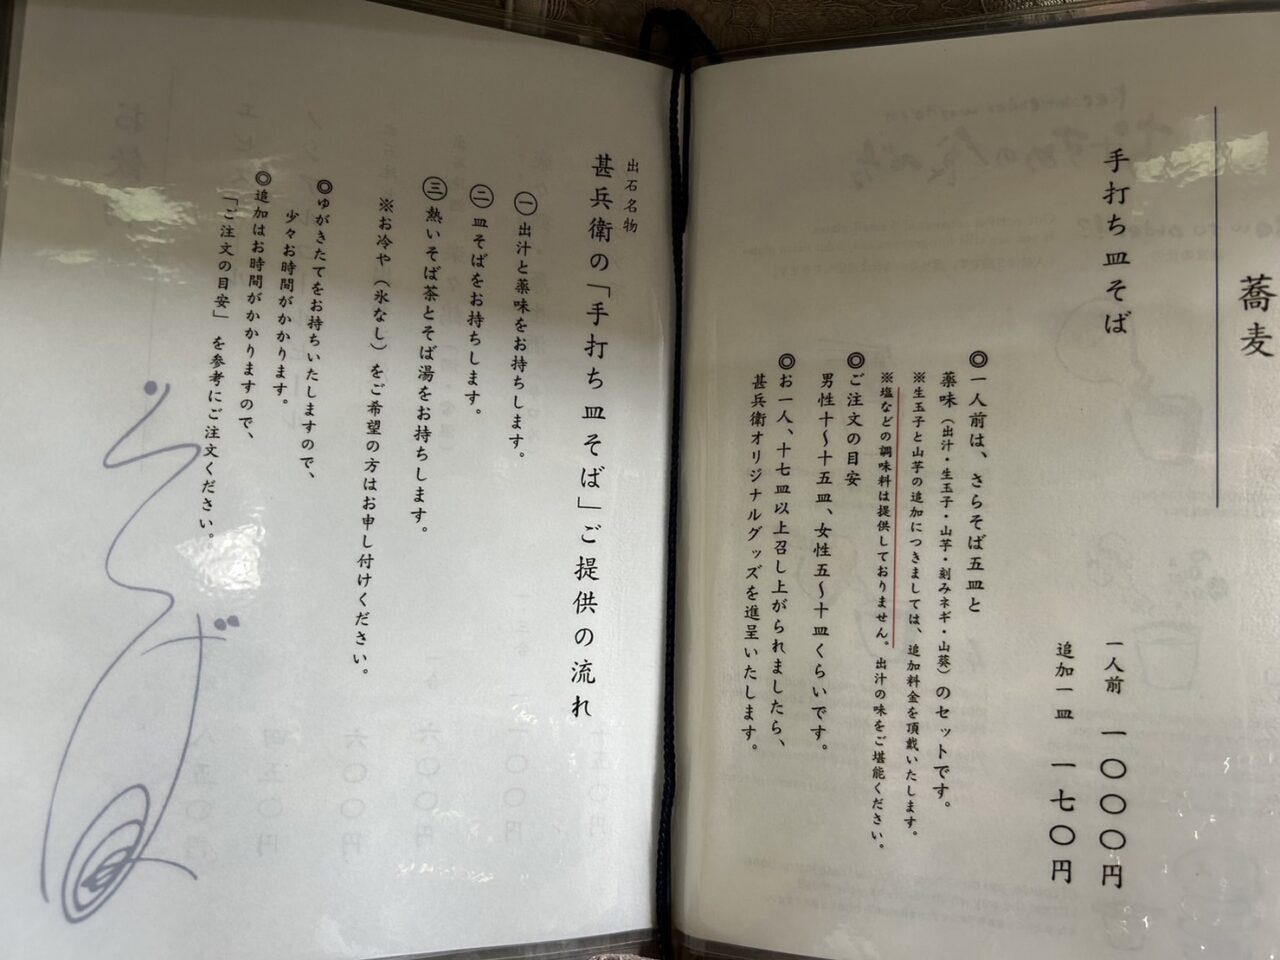 兵庫県豊岡市ミシュランビブグルマンに掲載された出石手打ち皿そば「甚兵衛」のメニュー